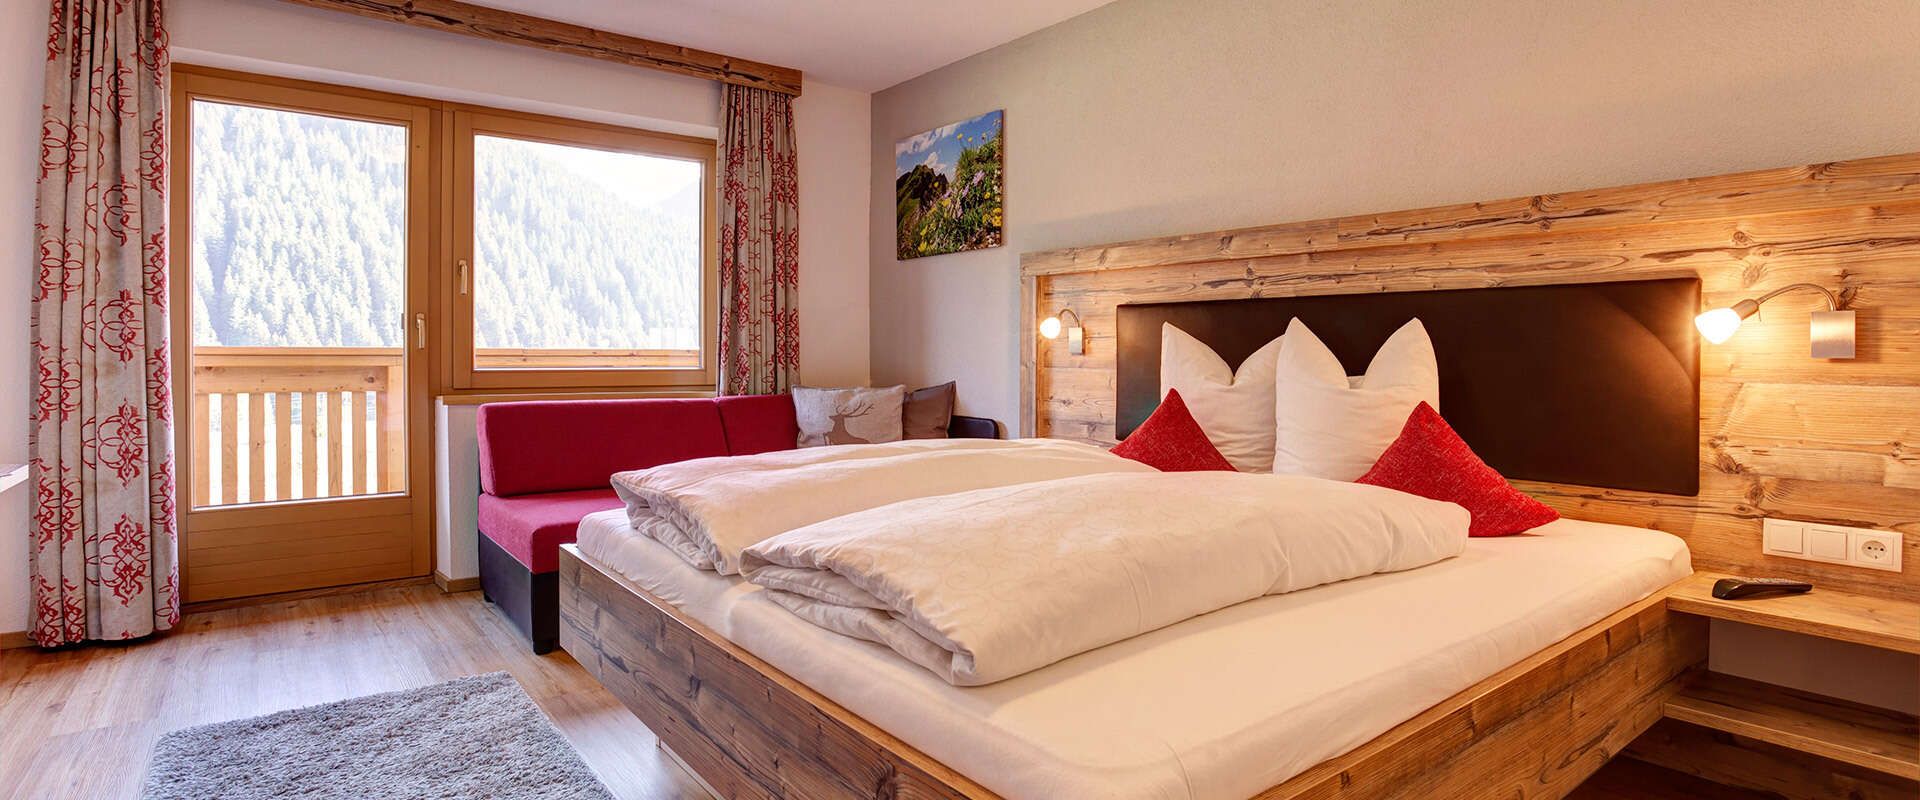 Zimmer in der Pension Roman in St Anton am Arlberg